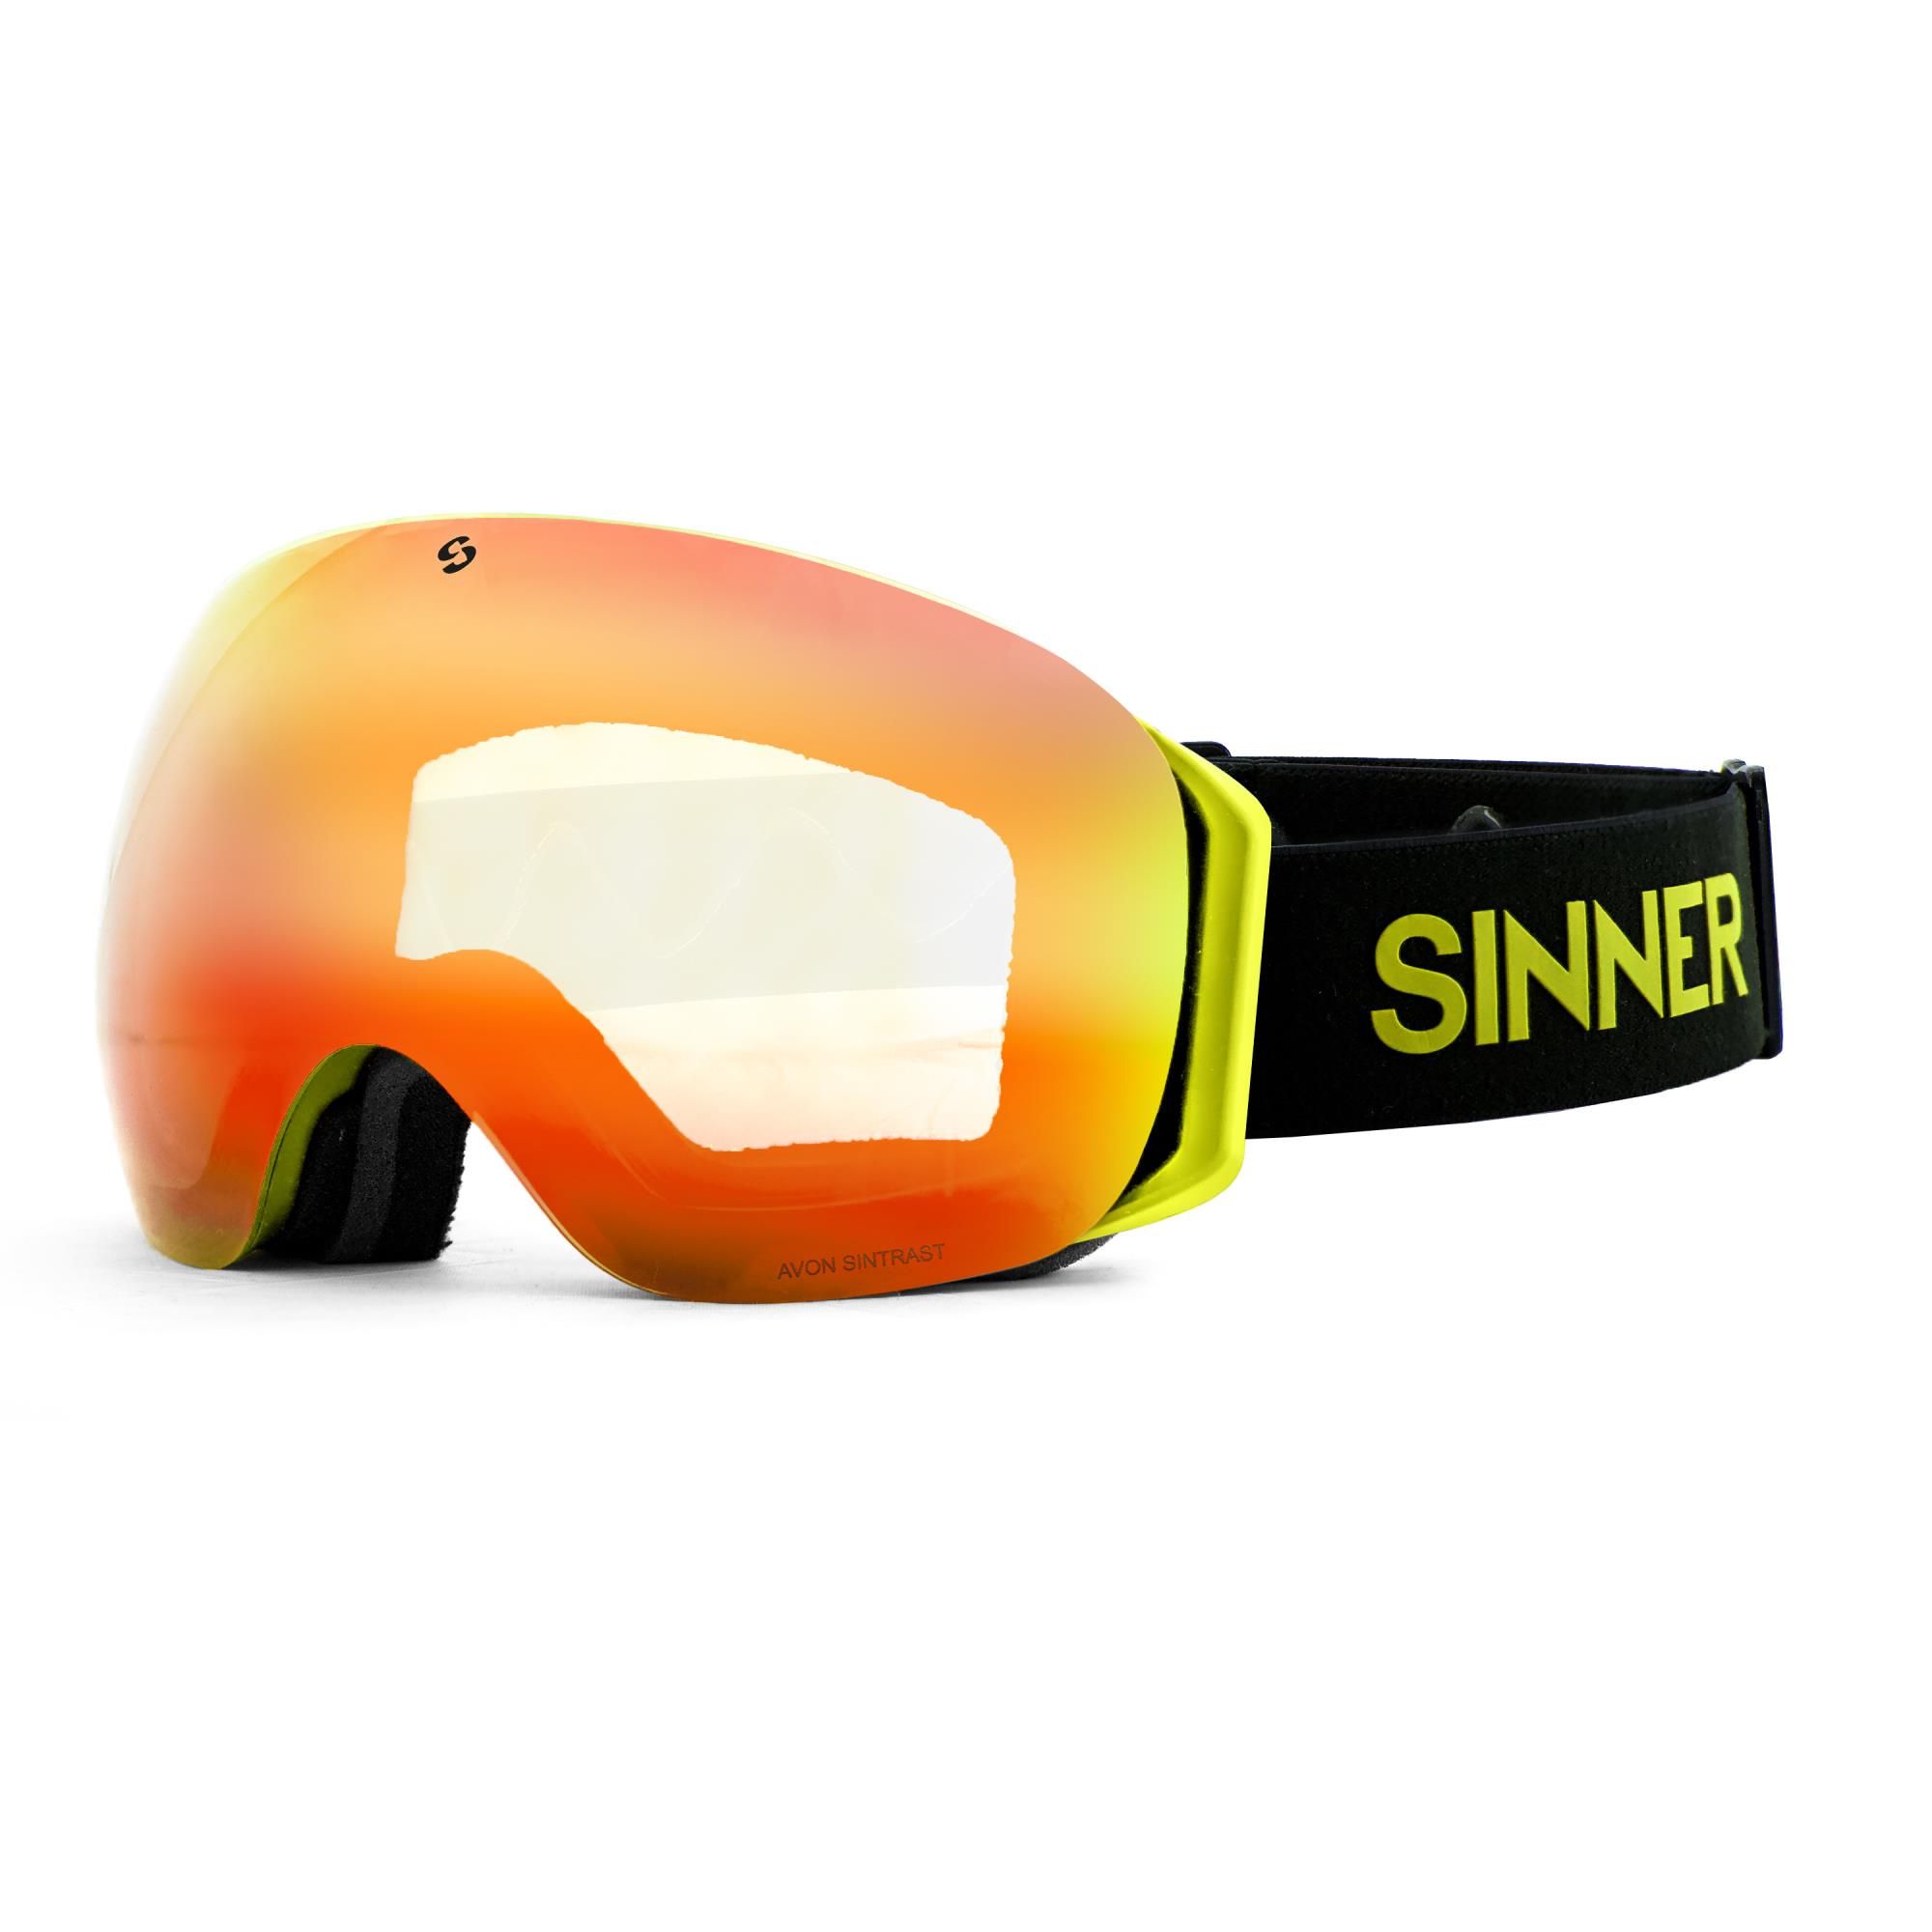 afdrijven gastheer vrijgesteld Sinner skibril Avon + spare lens online kopen?